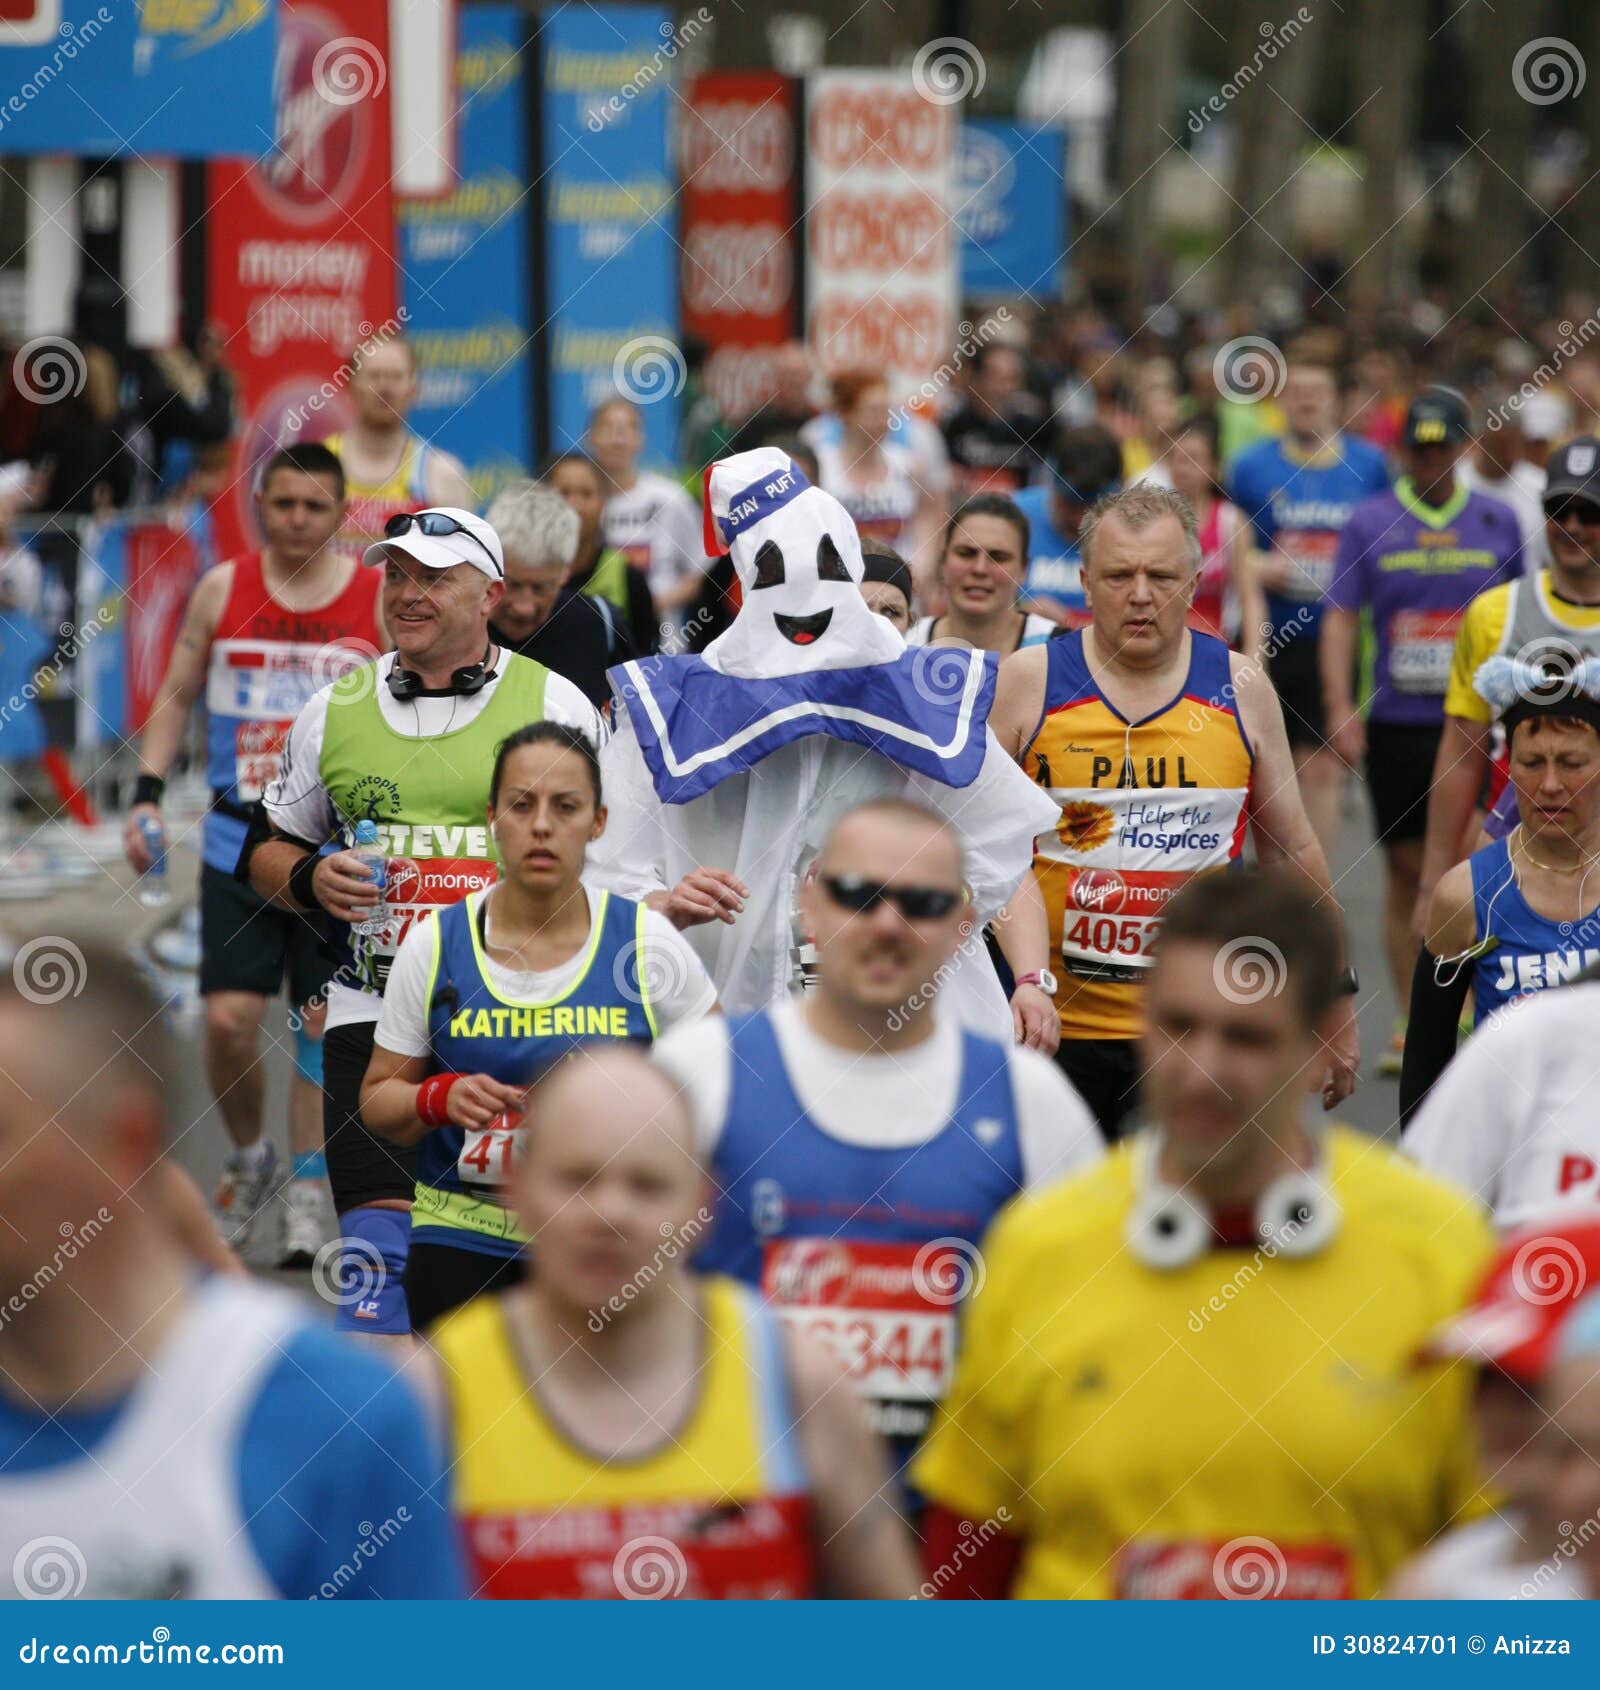 2013 de Marathon van Londen. Londen, het UK - 21 April, 2013: Deelnemer die grappig kostuum in de menigten van agenten van de Marathon van Londen dragen. De marathon van Londen is naast New York, Berlijn, Chicago en Boston aan de Majoors van de Wereldmarathon, de Kampioenenliga in de marathon.